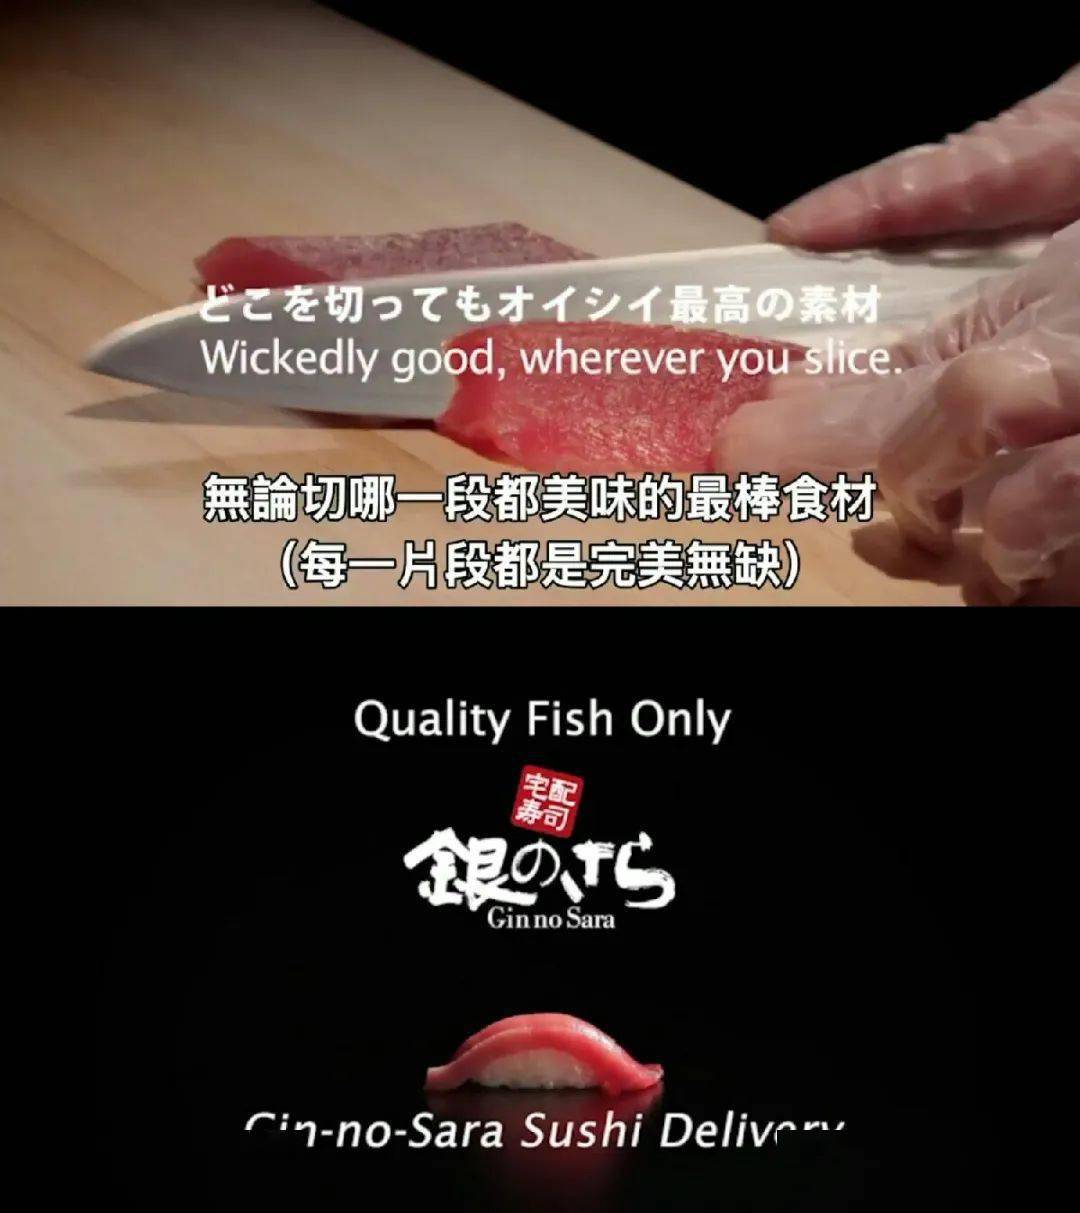 日本人这些奇葩广告的脑洞令人佩服!